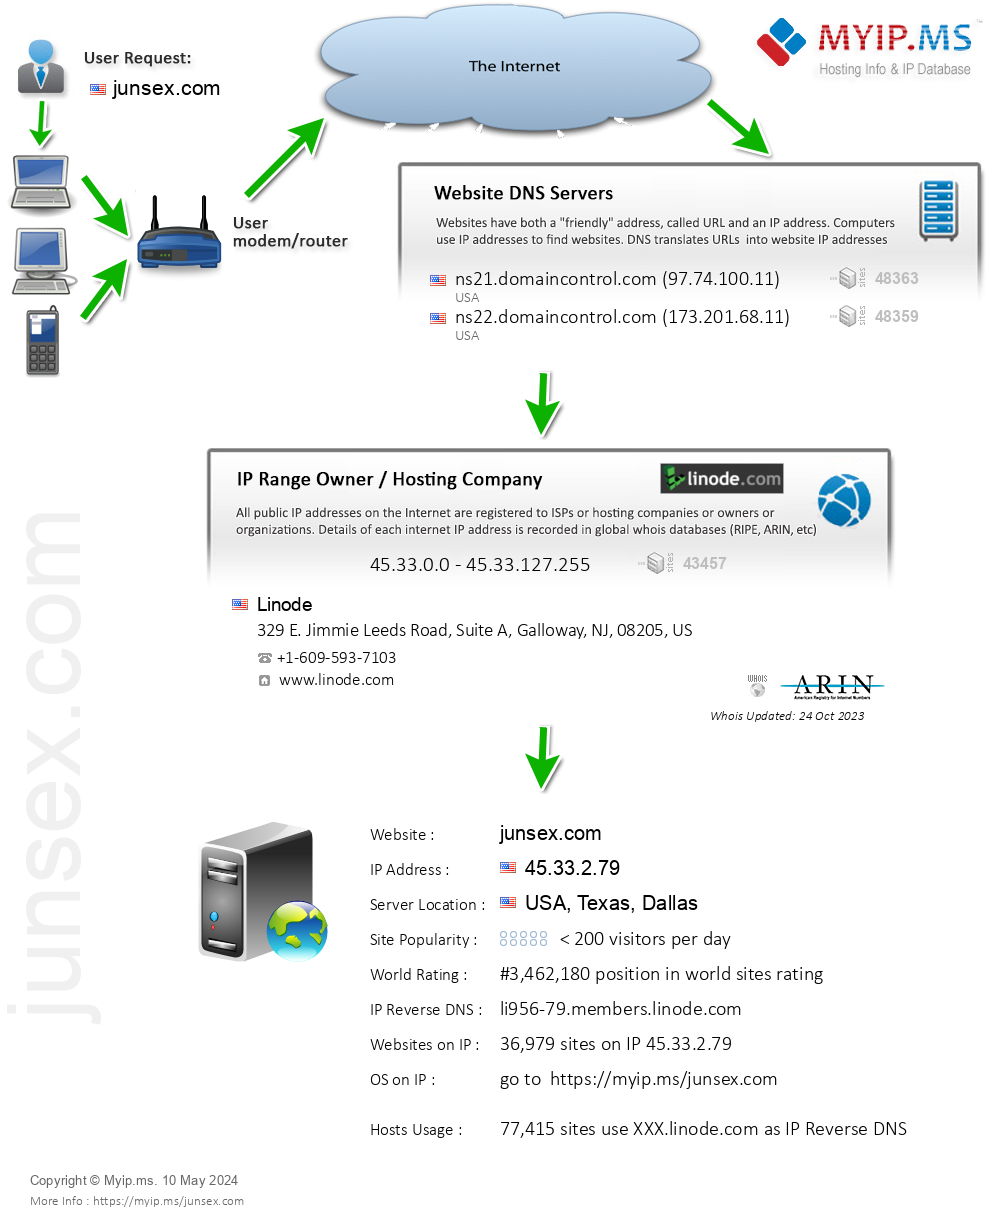 Junsex.com - Website Hosting Visual IP Diagram